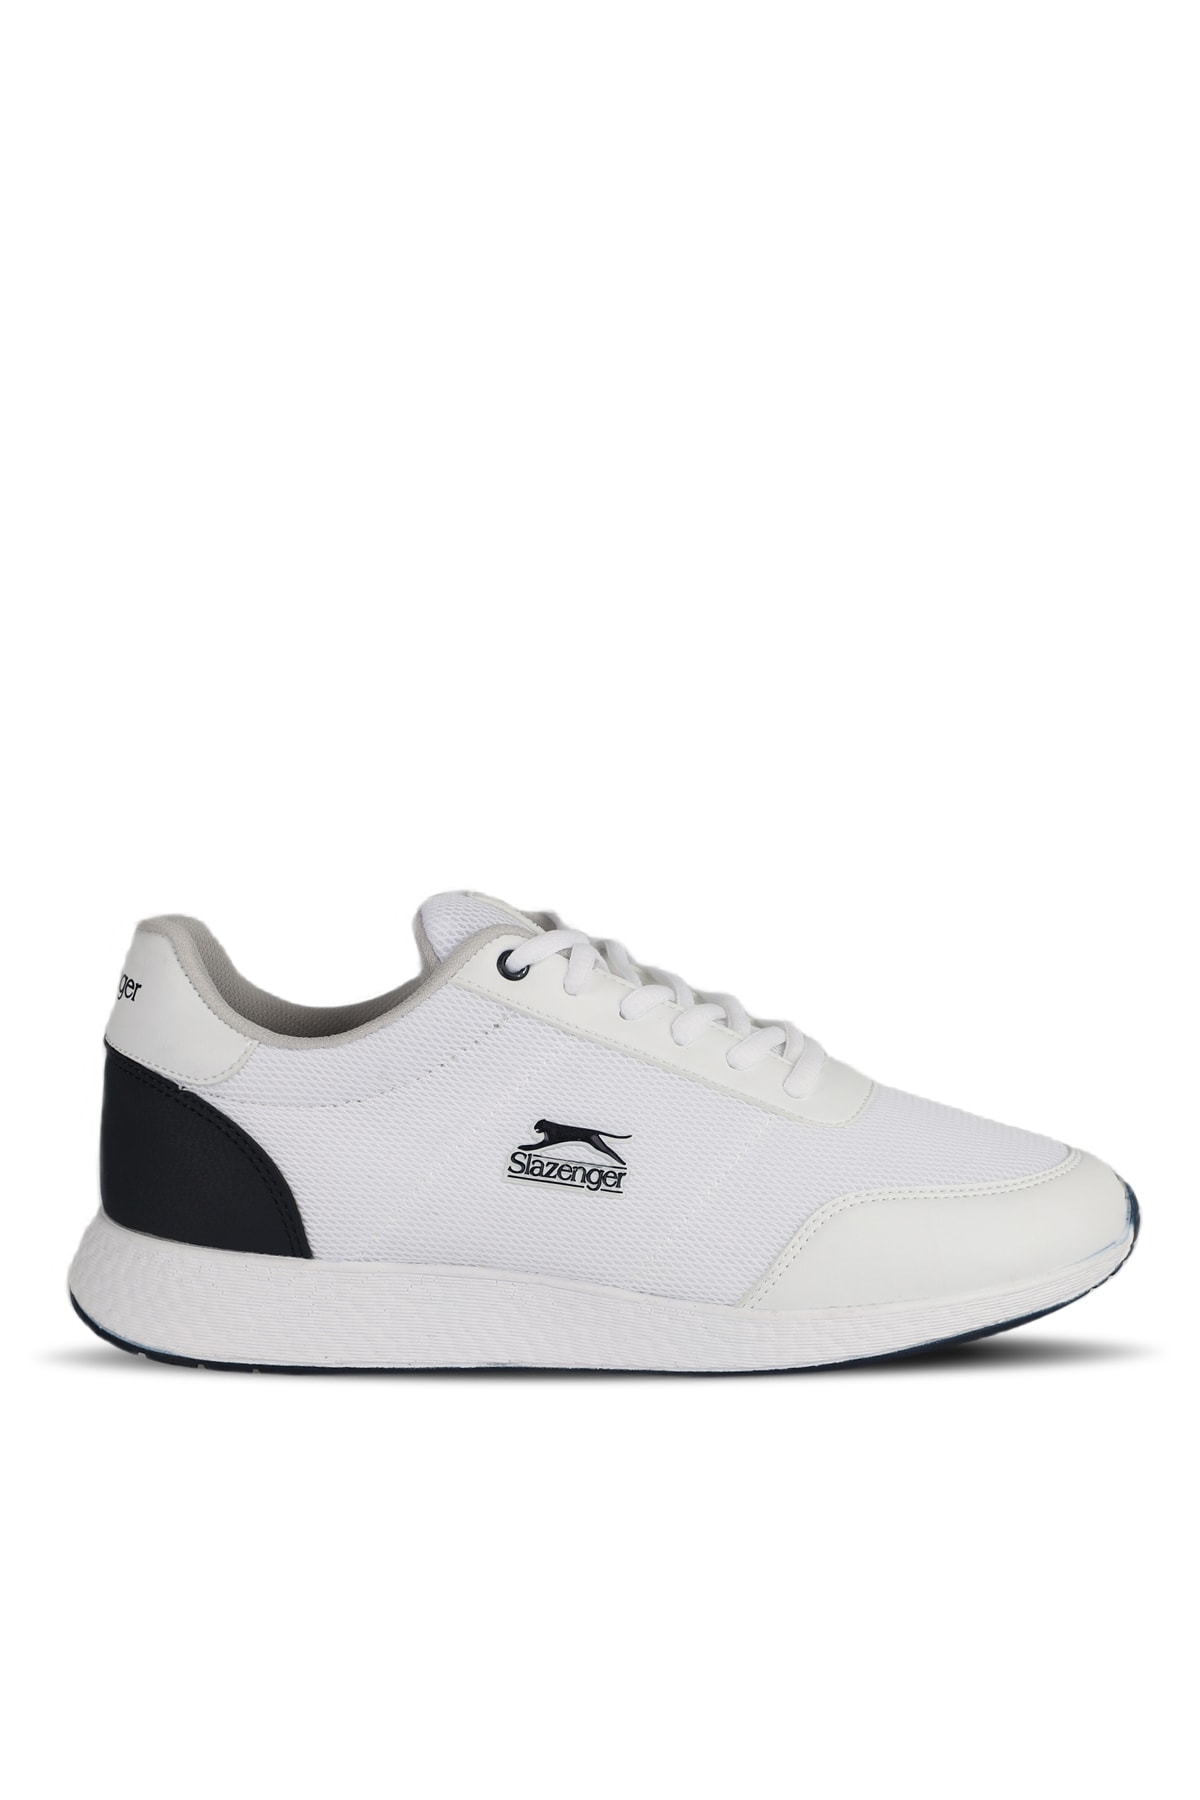 Slazenger Onyeka I Sneaker Men's Shoes White